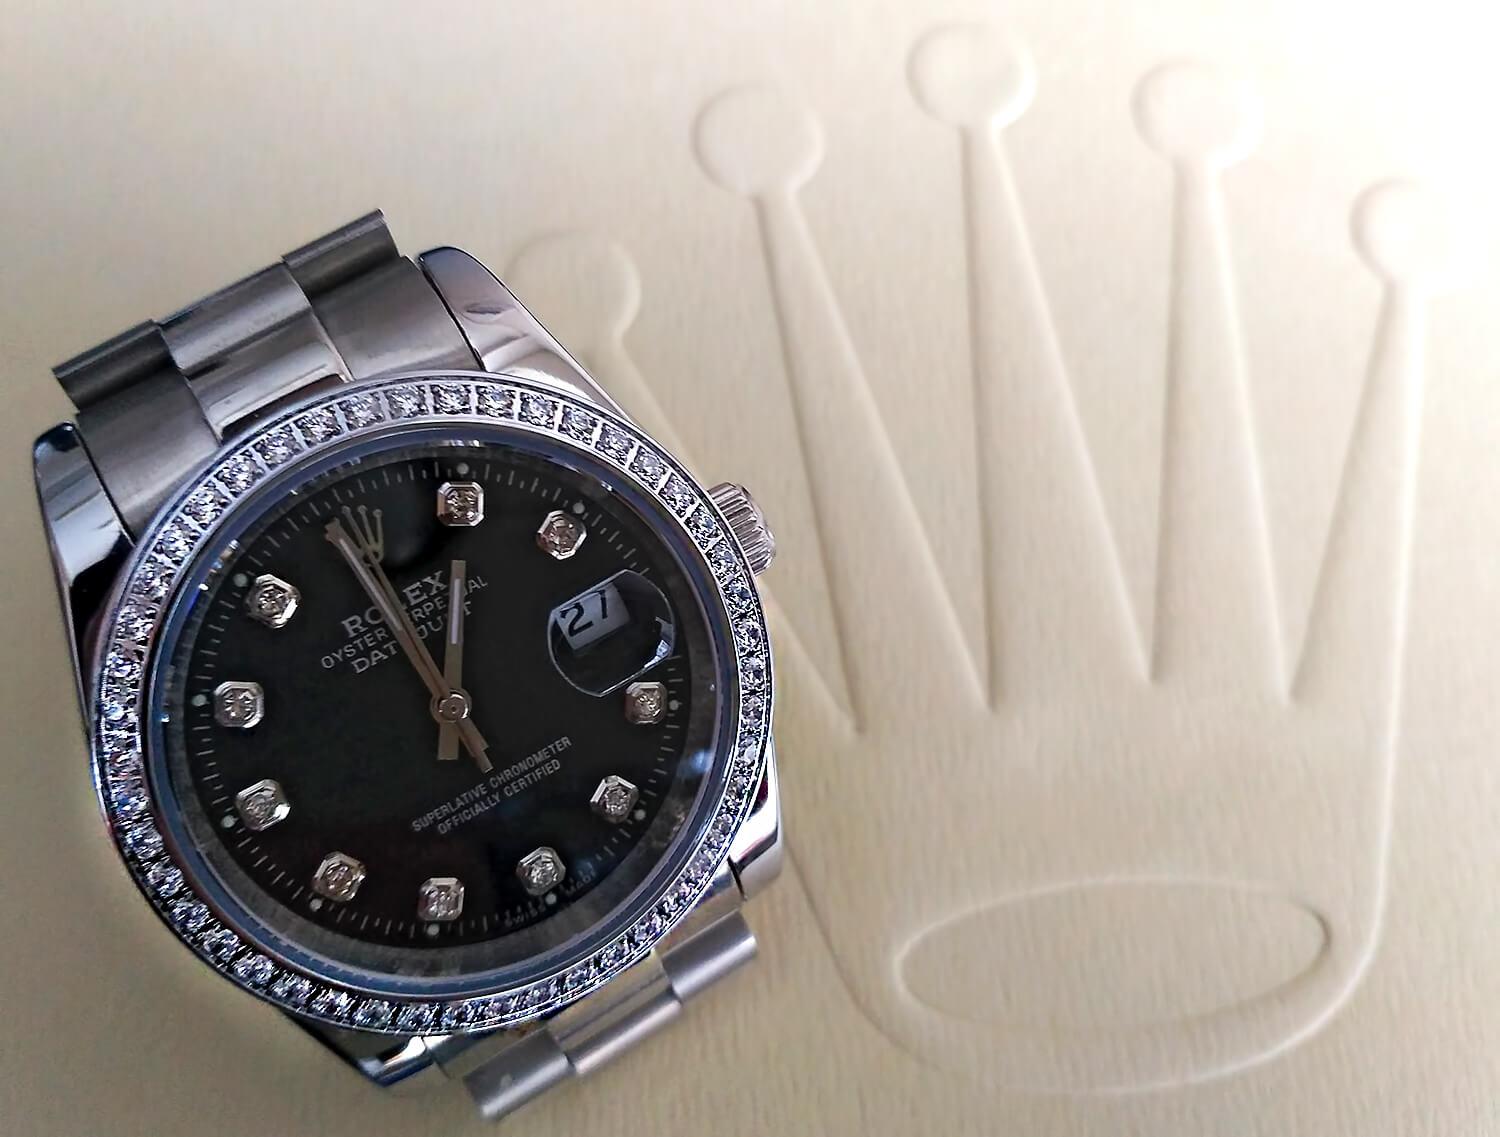 Часы Rolex во всем мире считаются символом богатства, успешности, высокого статуса